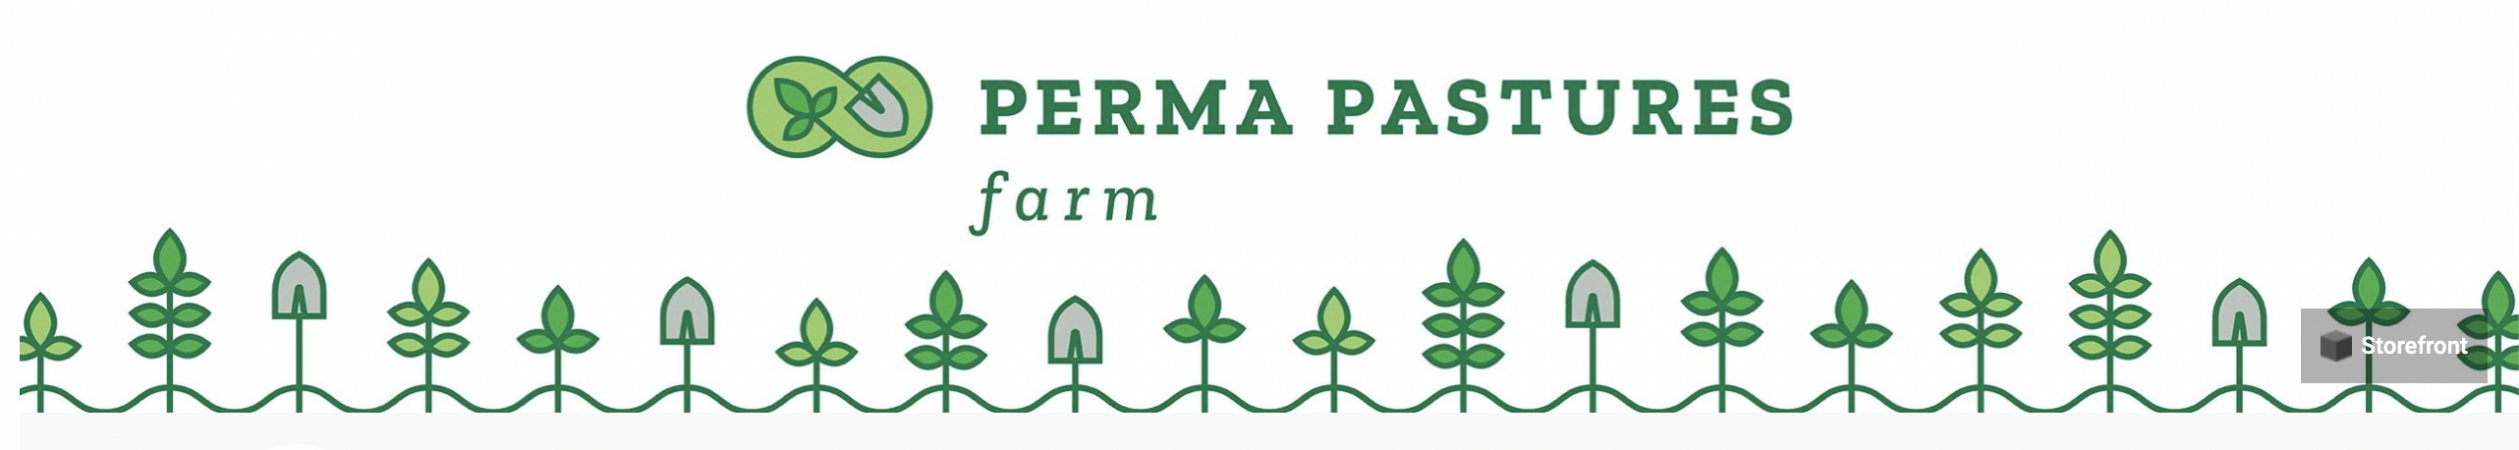 Perma Pastures Q&A Forum